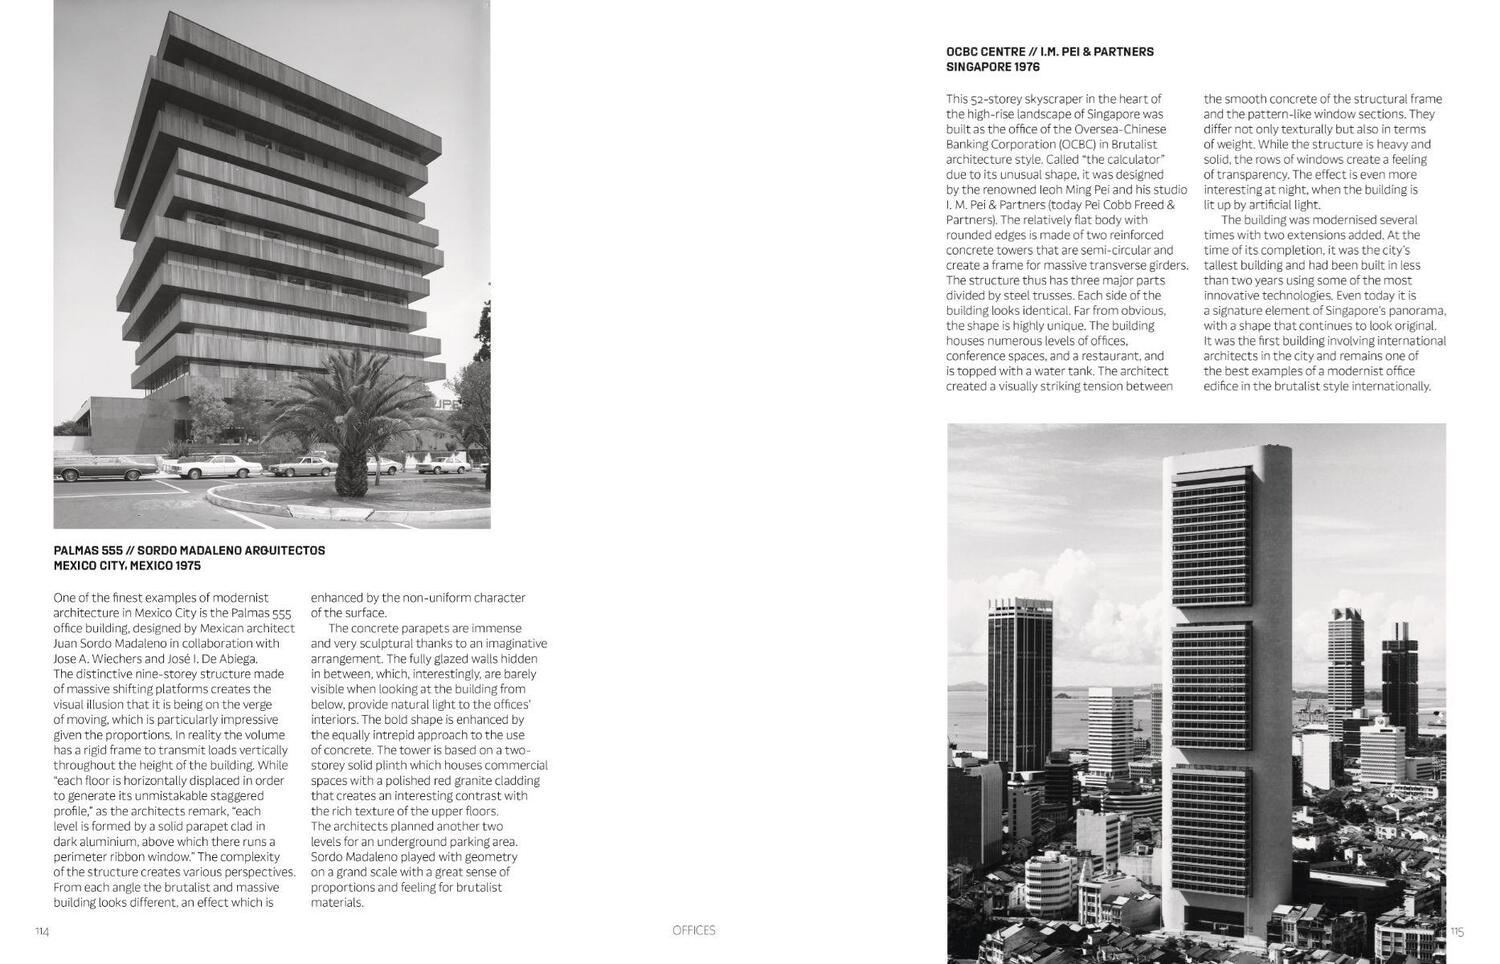 Bild: 9783791388113 | Brutalism Reinvented (engl.) | 21st Century Modernist Architecture